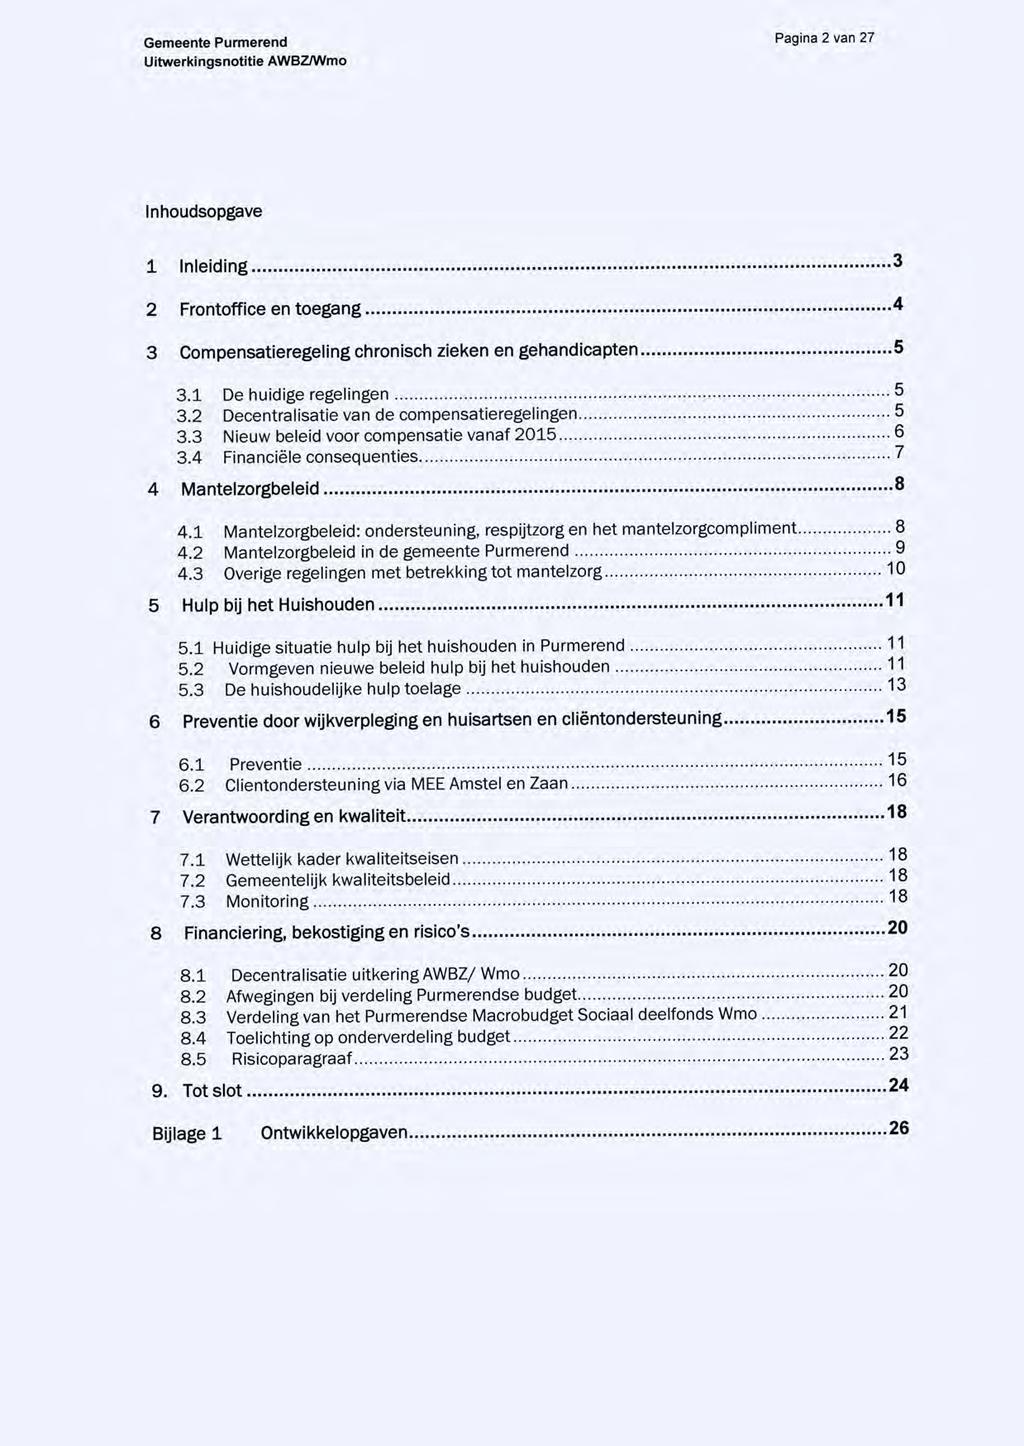 Pagina 2 van 27 Inhoudsopgave 1 Inleiding 3 2 Frontoffice en toegang 4 3 Compensatieregeling chronisch zieken en gehandicapten 5 3.1 De huidige regelingen 3.